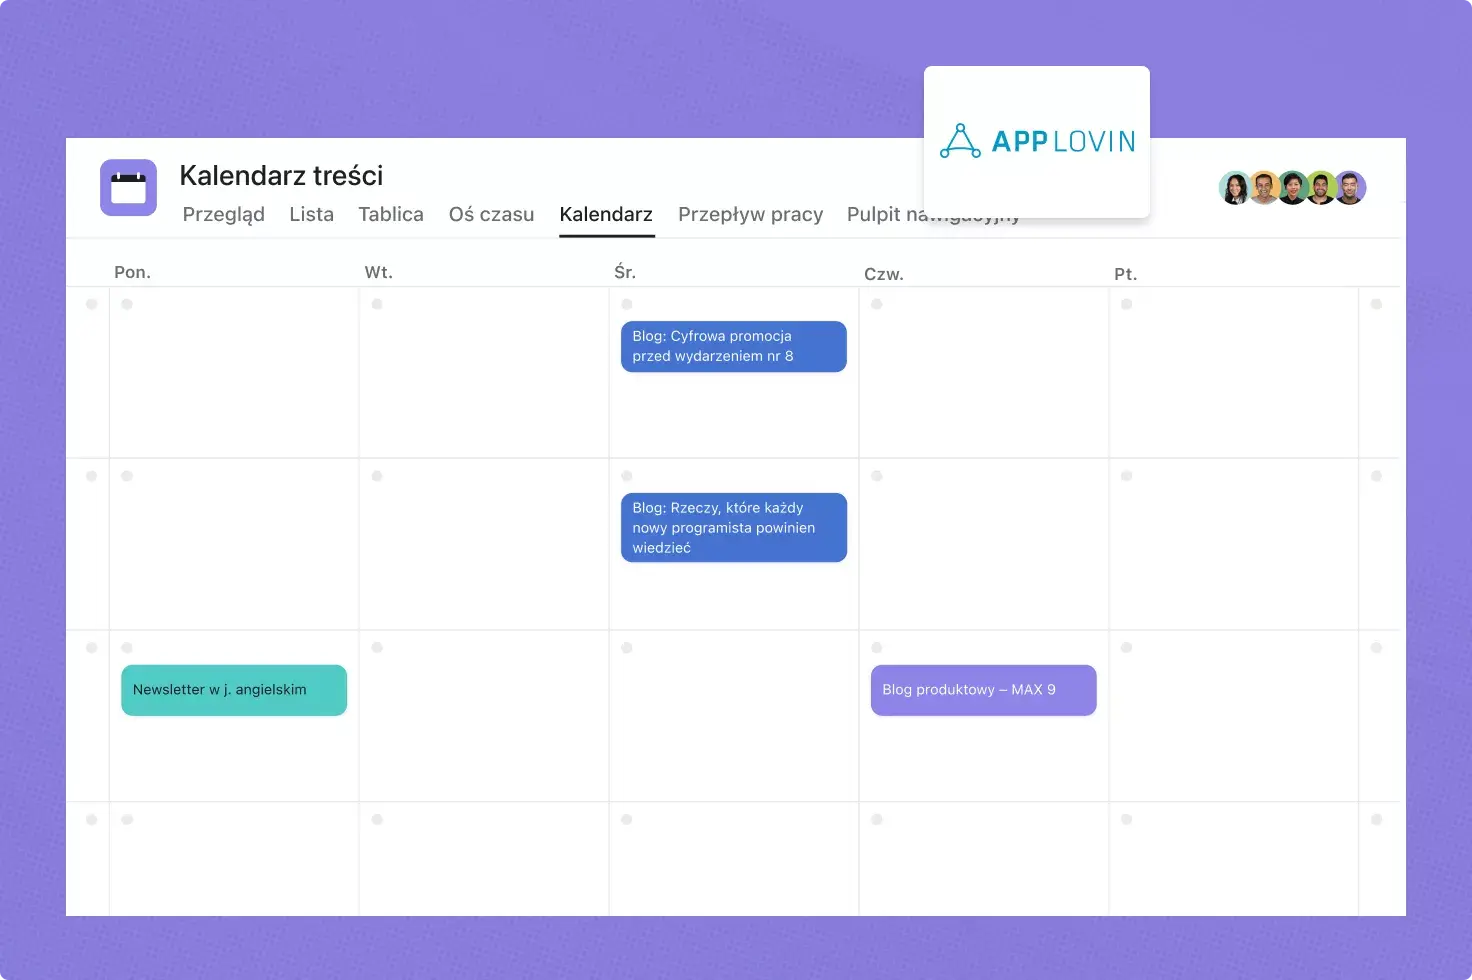 AppLovin korzysta z Asany do zarządzania przepływem pracy dotyczącym kalendarza treści